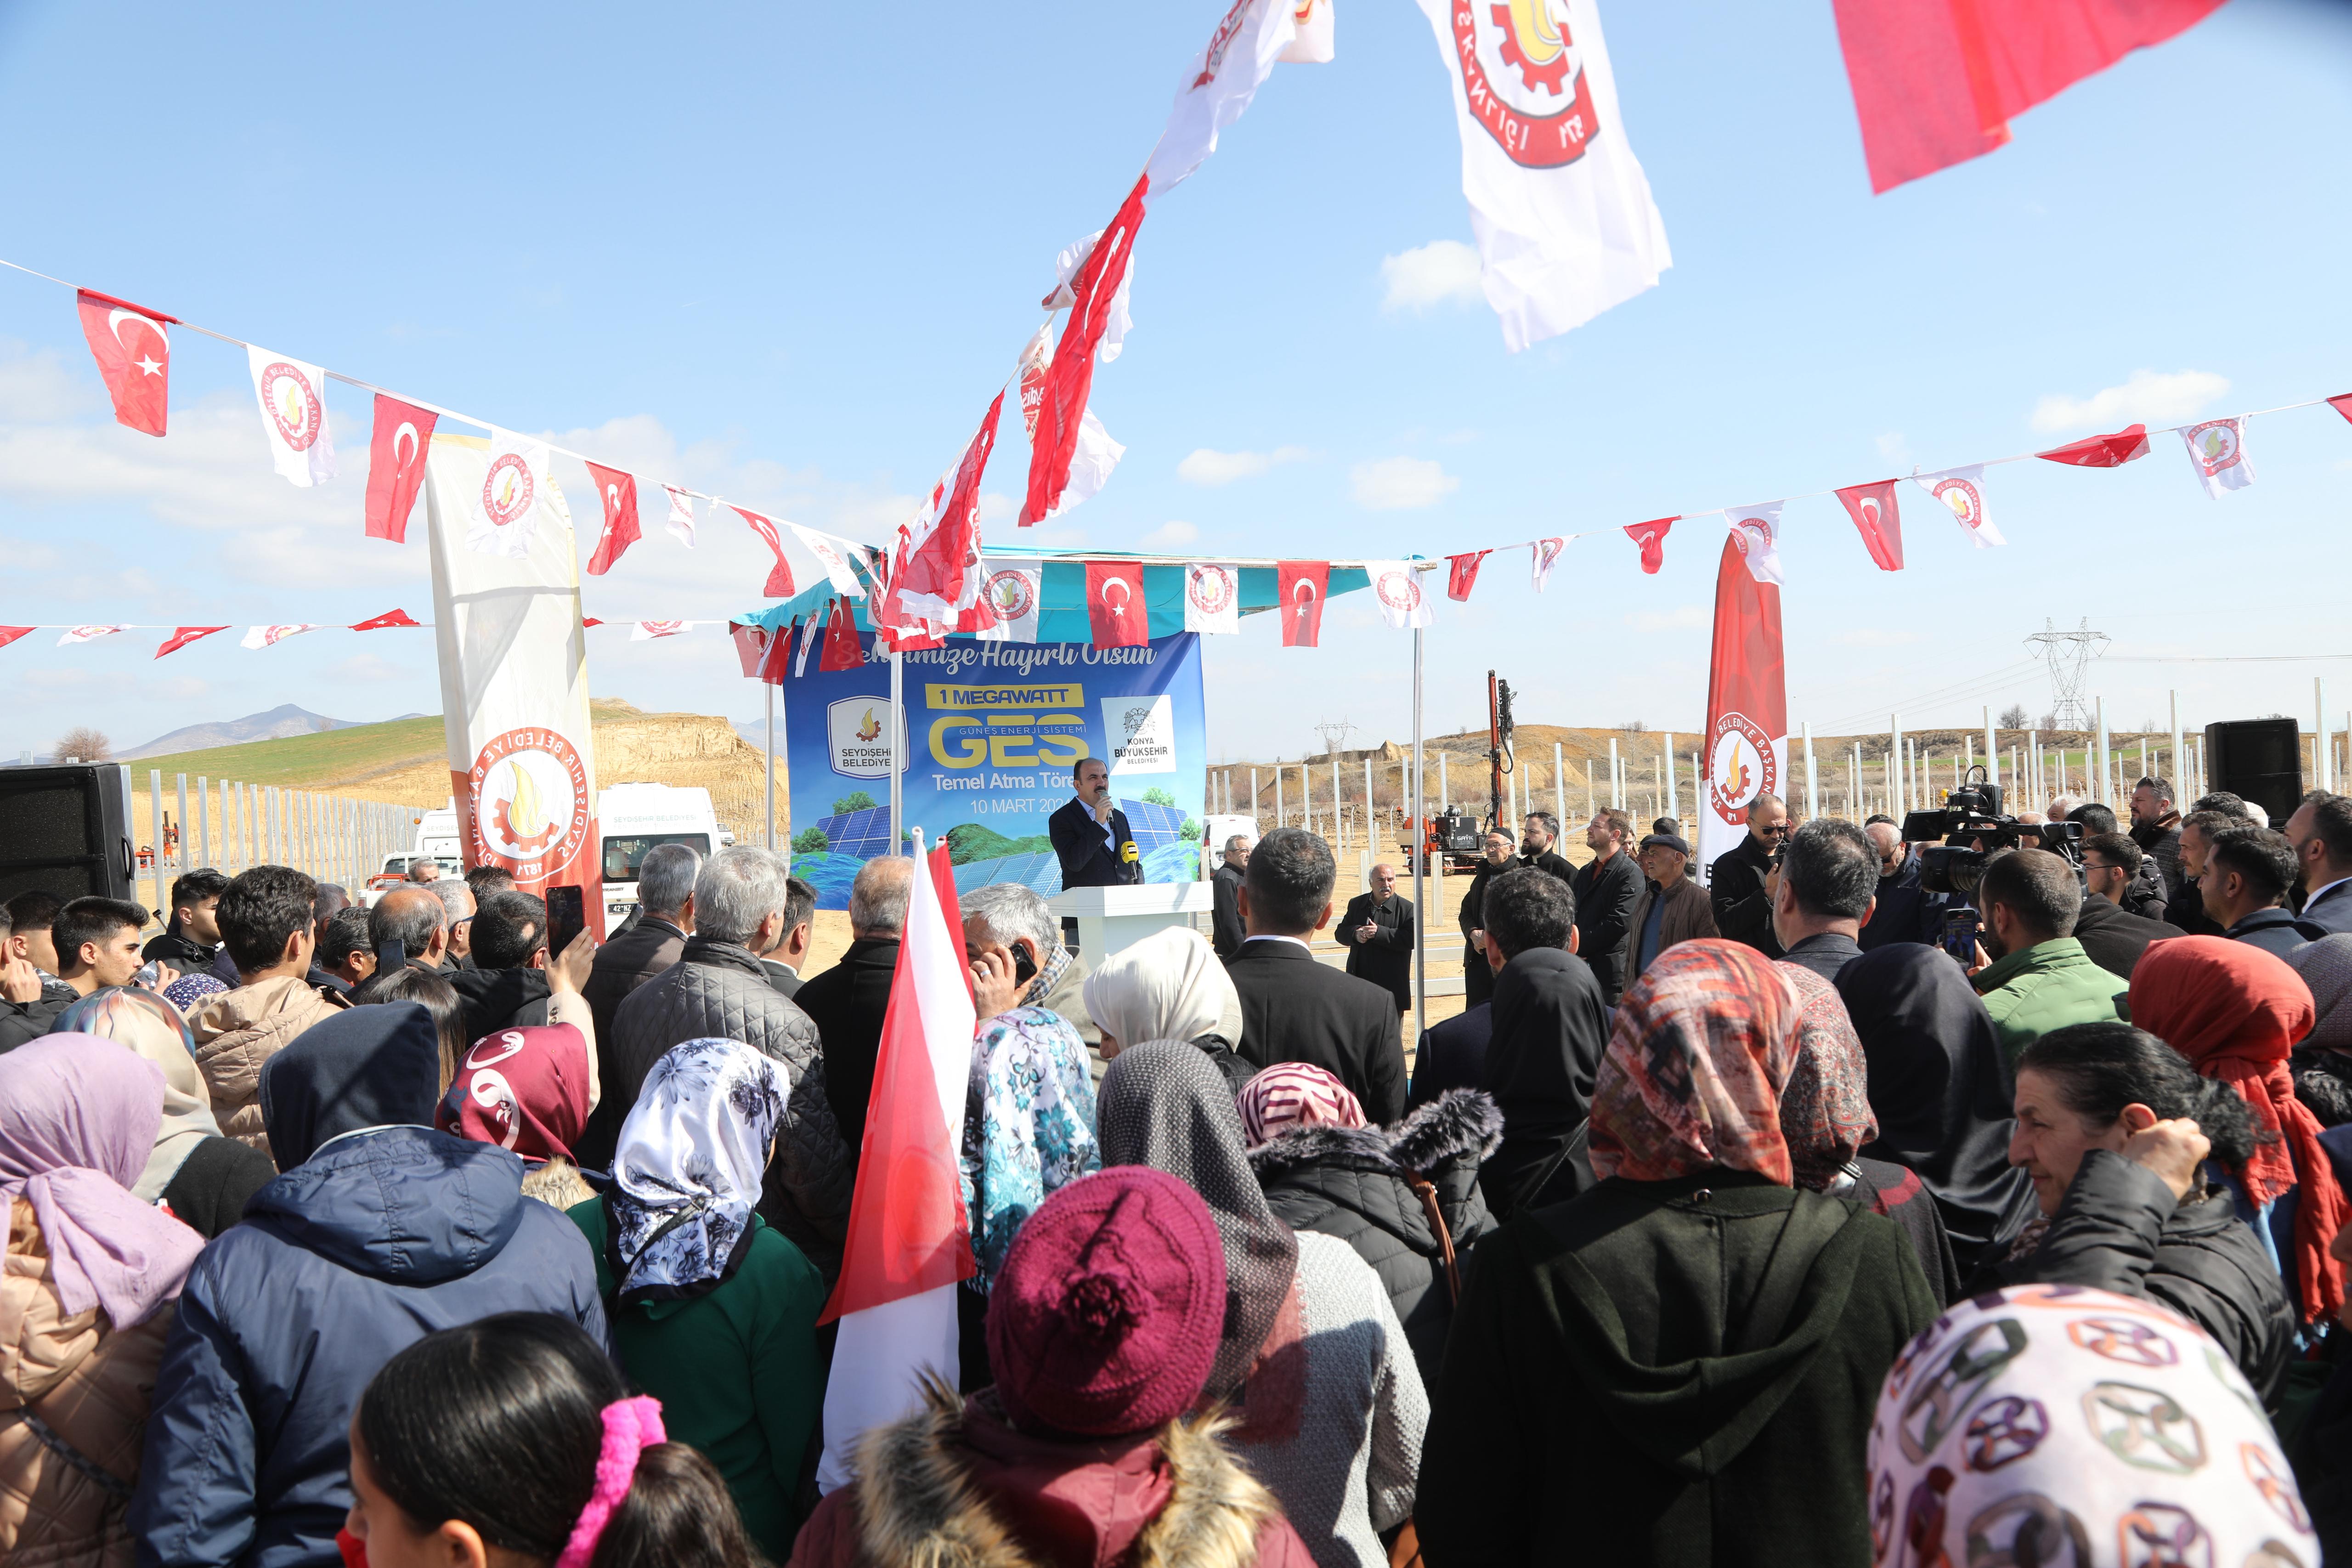 Başkan Altay, Seydişehir GES’İN Temel Atma Programı’na katıldı